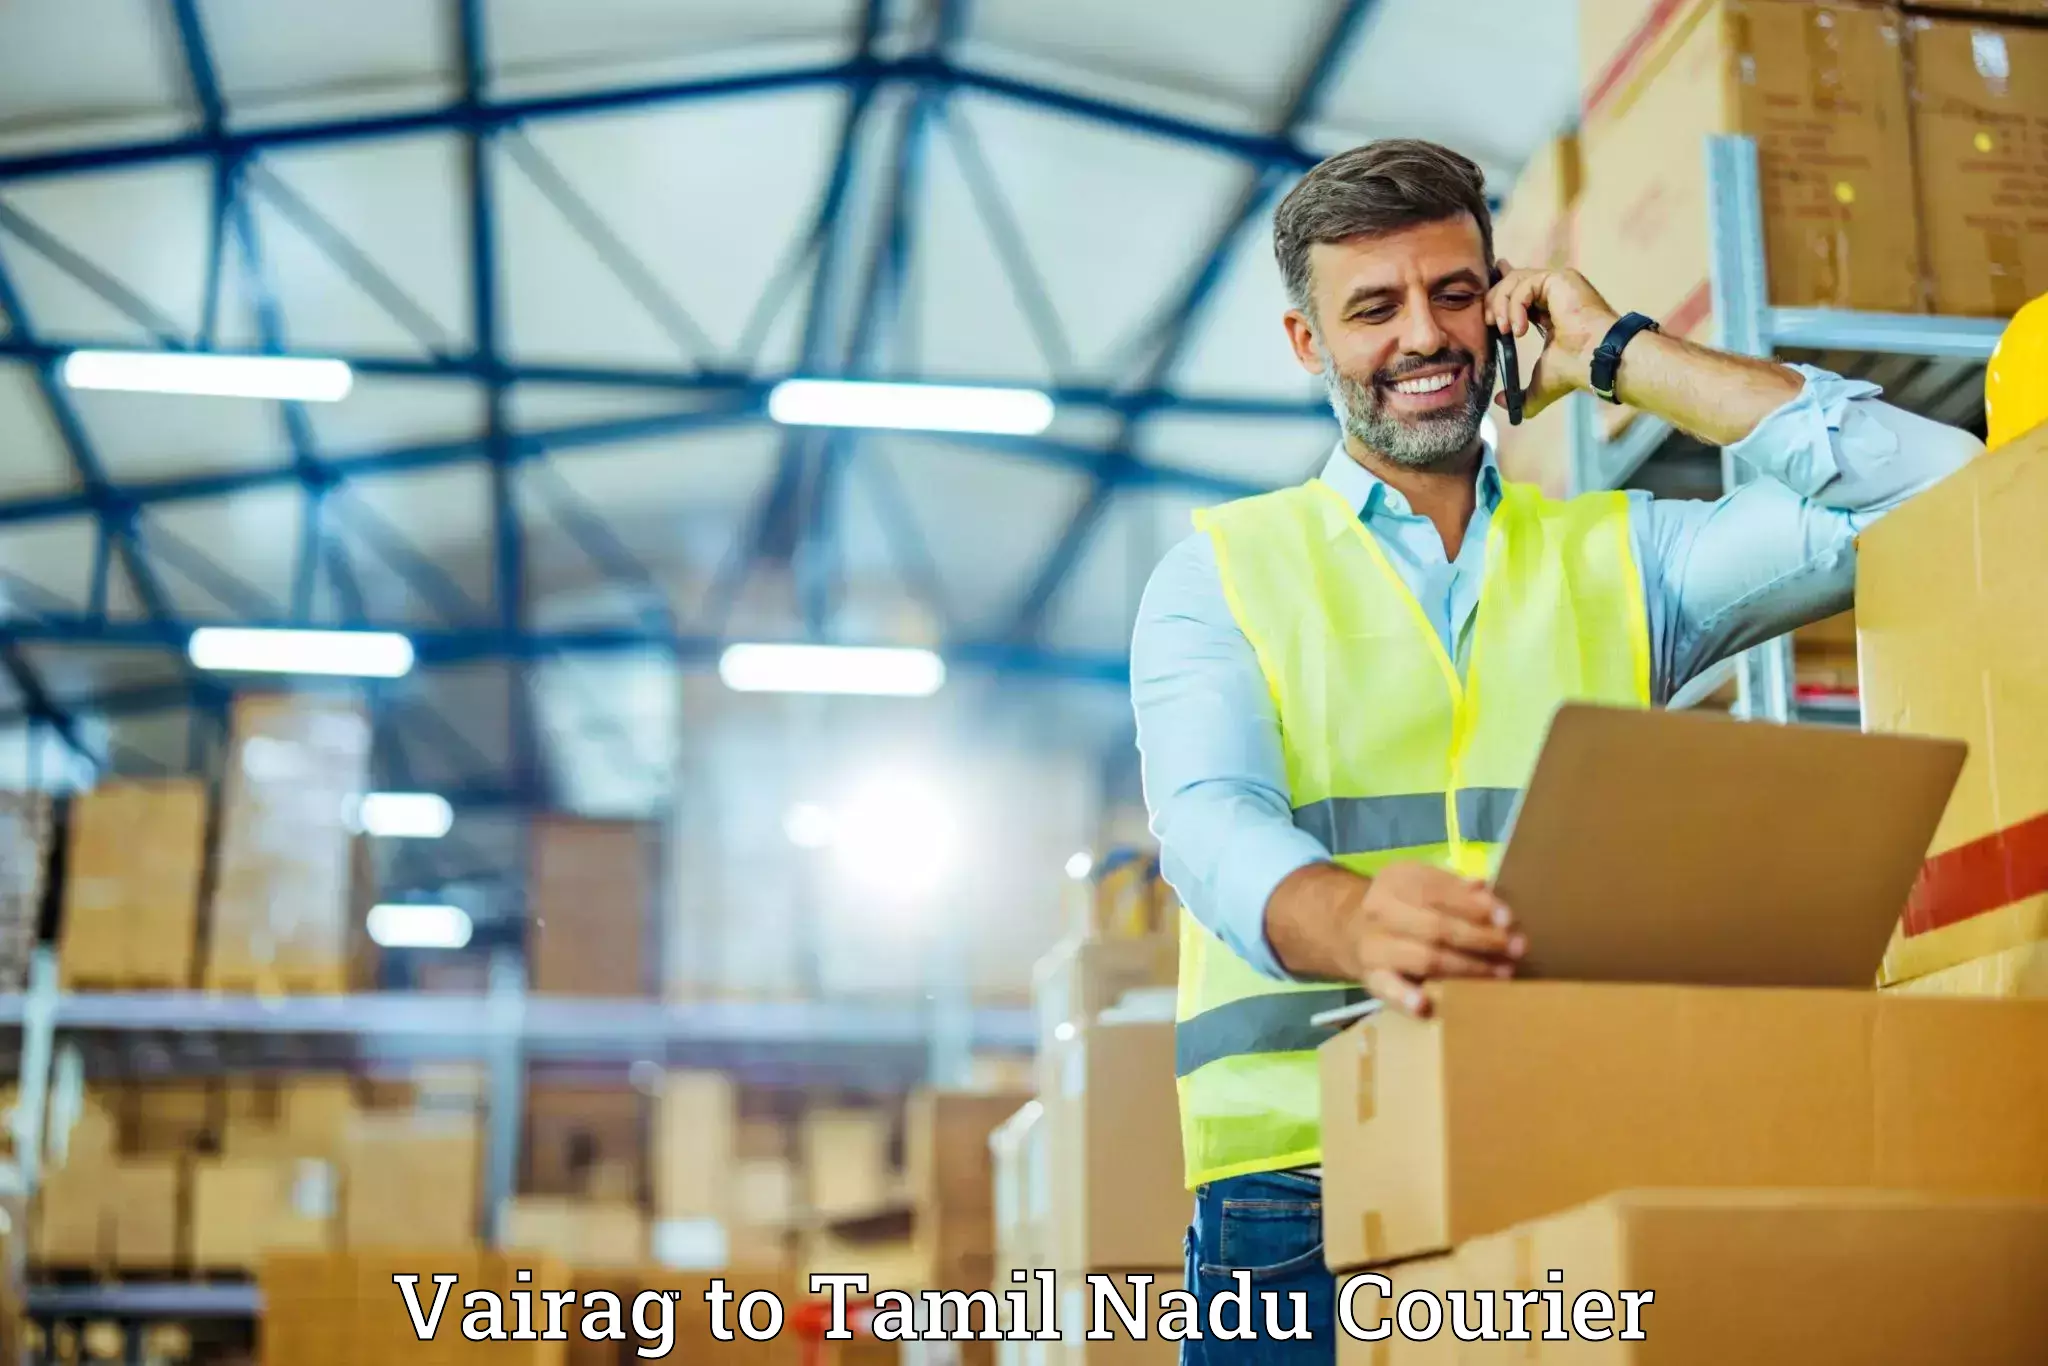 Baggage transport innovation Vairag to Tamil Nadu